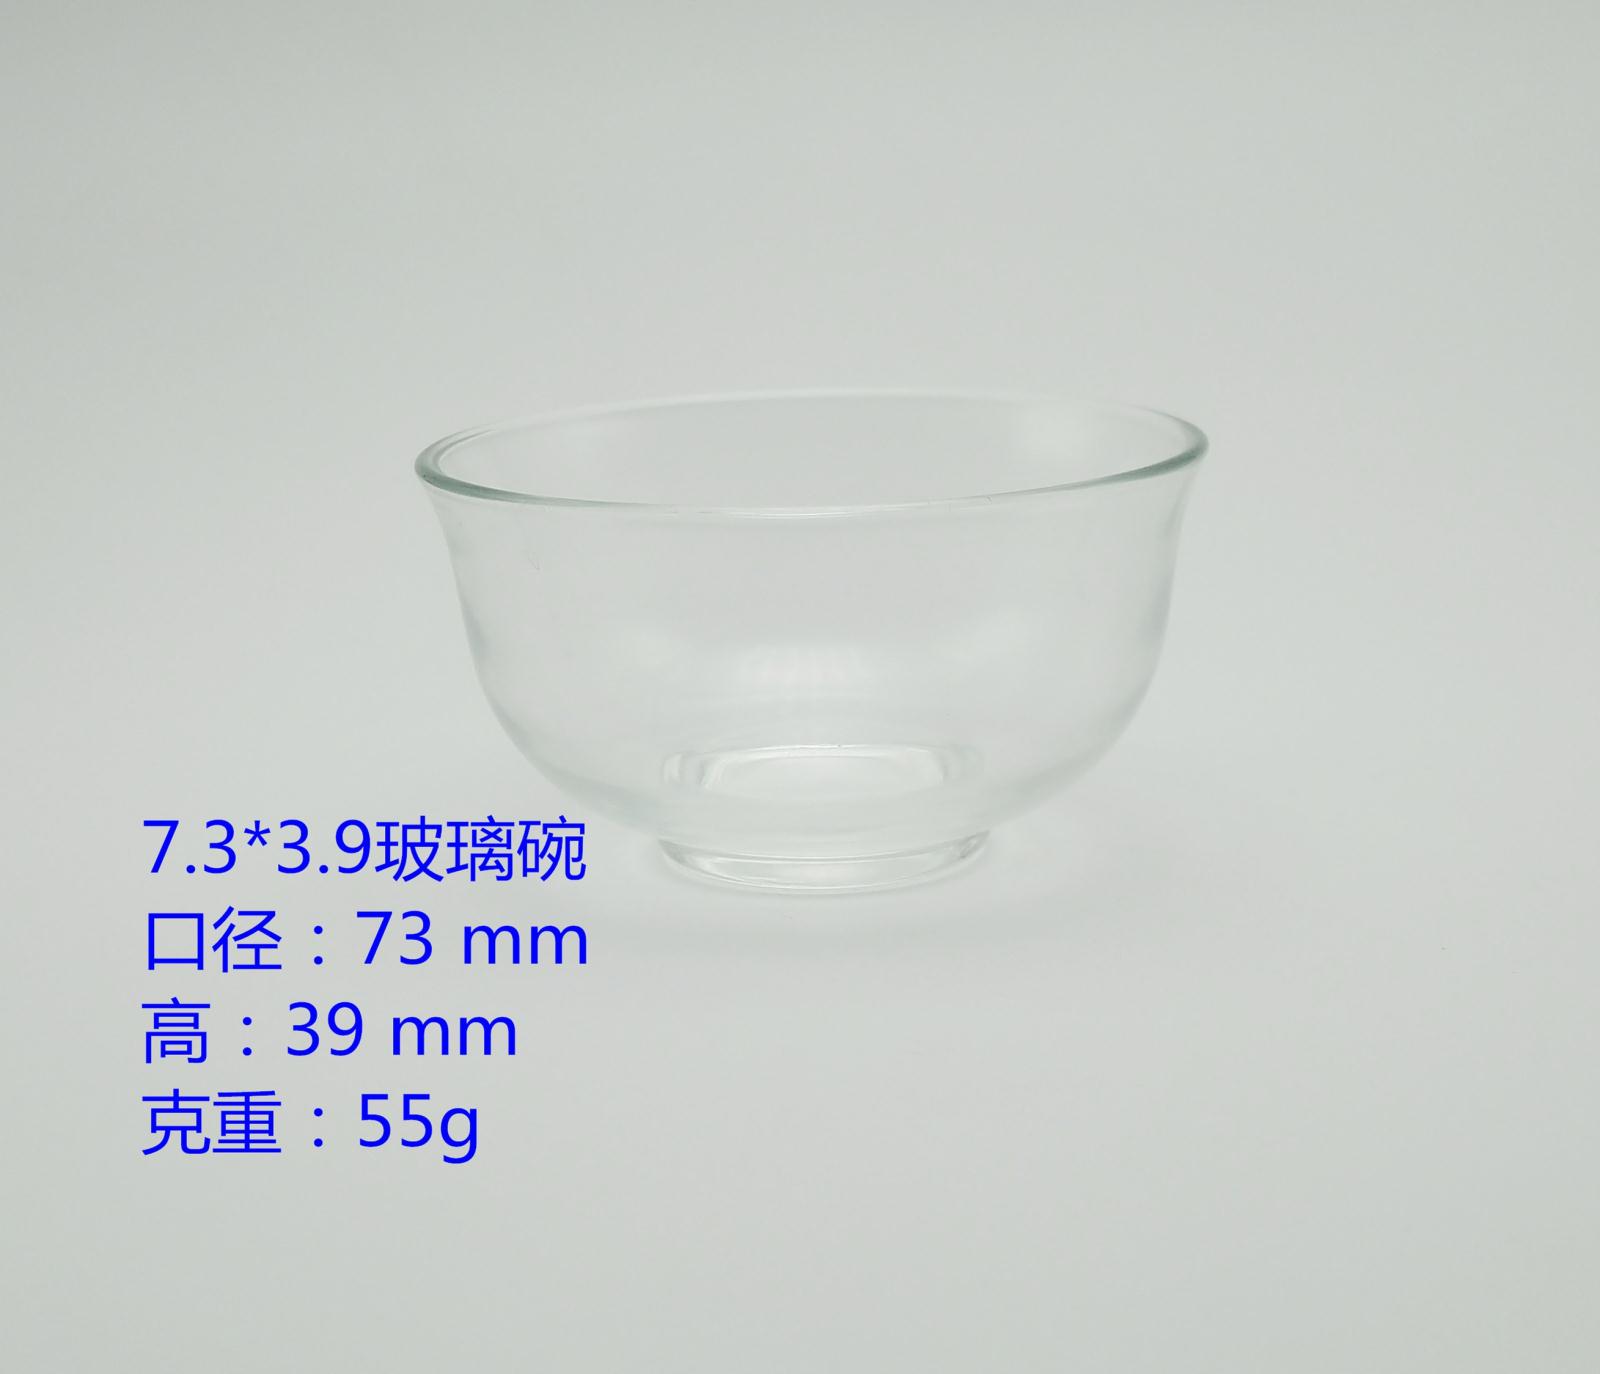 7.3*3.9玻璃碗